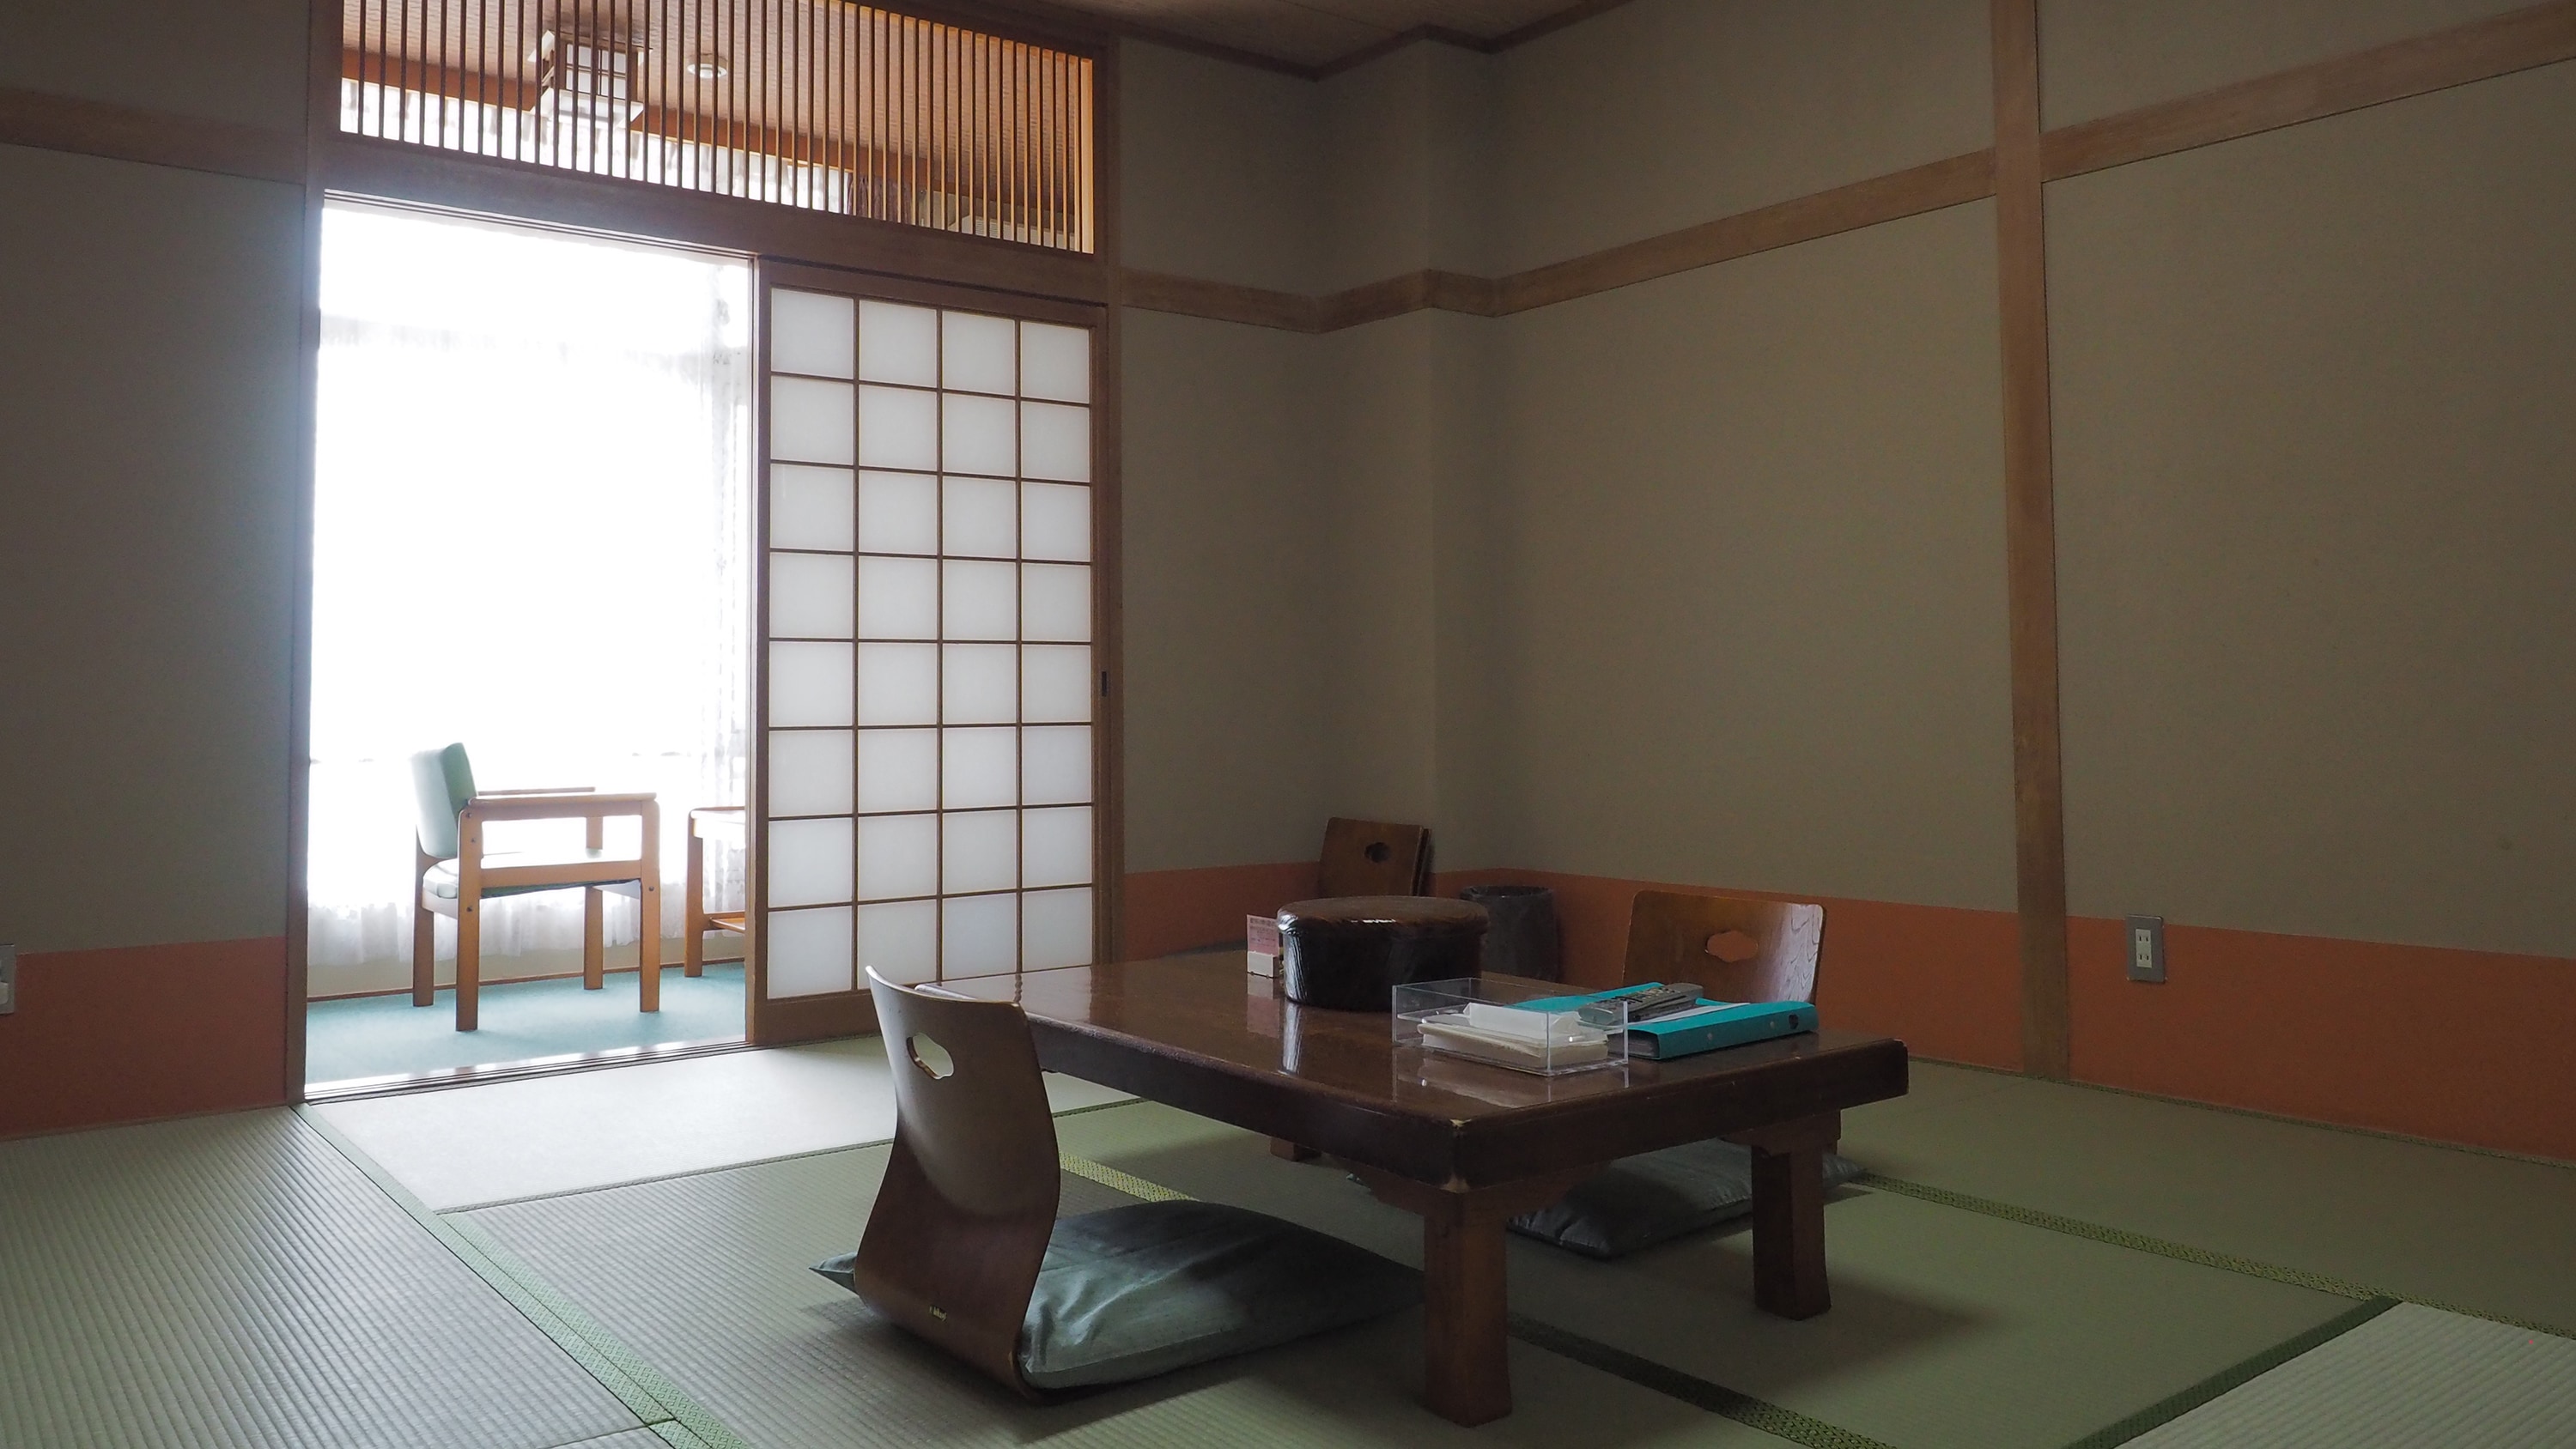 อาคารหลัก ห้องสไตล์ญี่ปุ่น 8 เสื่อทาทามิ (ตัวอย่าง)